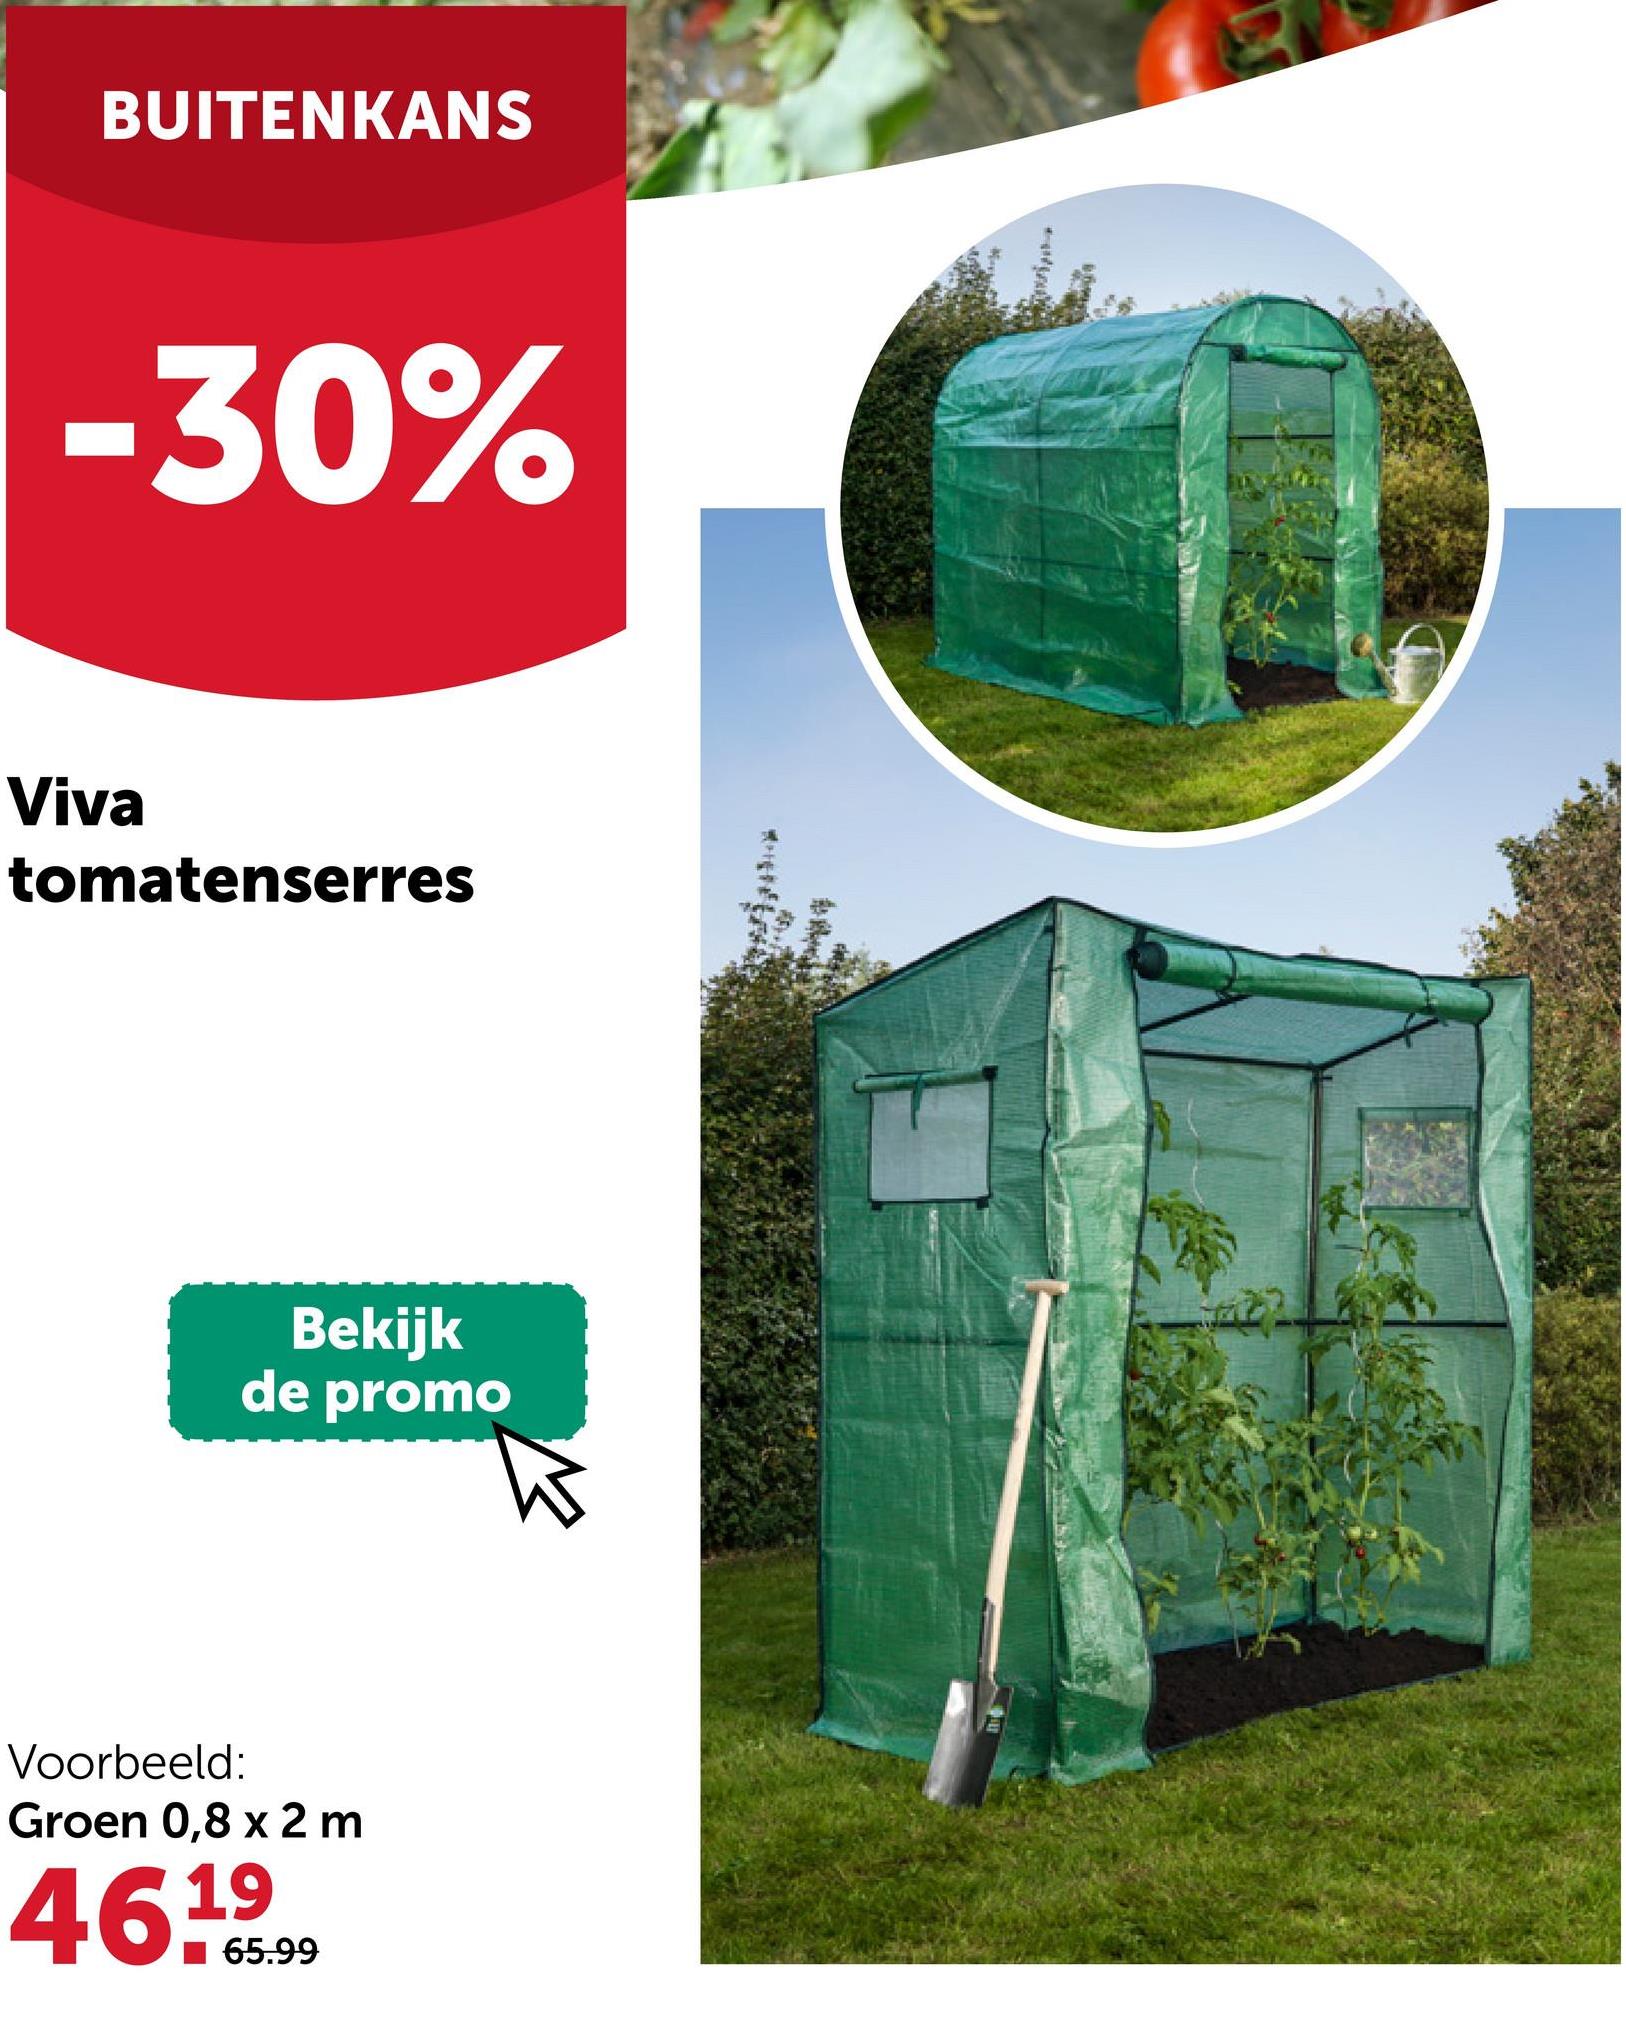 BUITENKANS
-30%
Viva
tomatenserres
Bekijk
de promo
Voorbeeld:
Groen 0,8 x 2 m
46.65.99